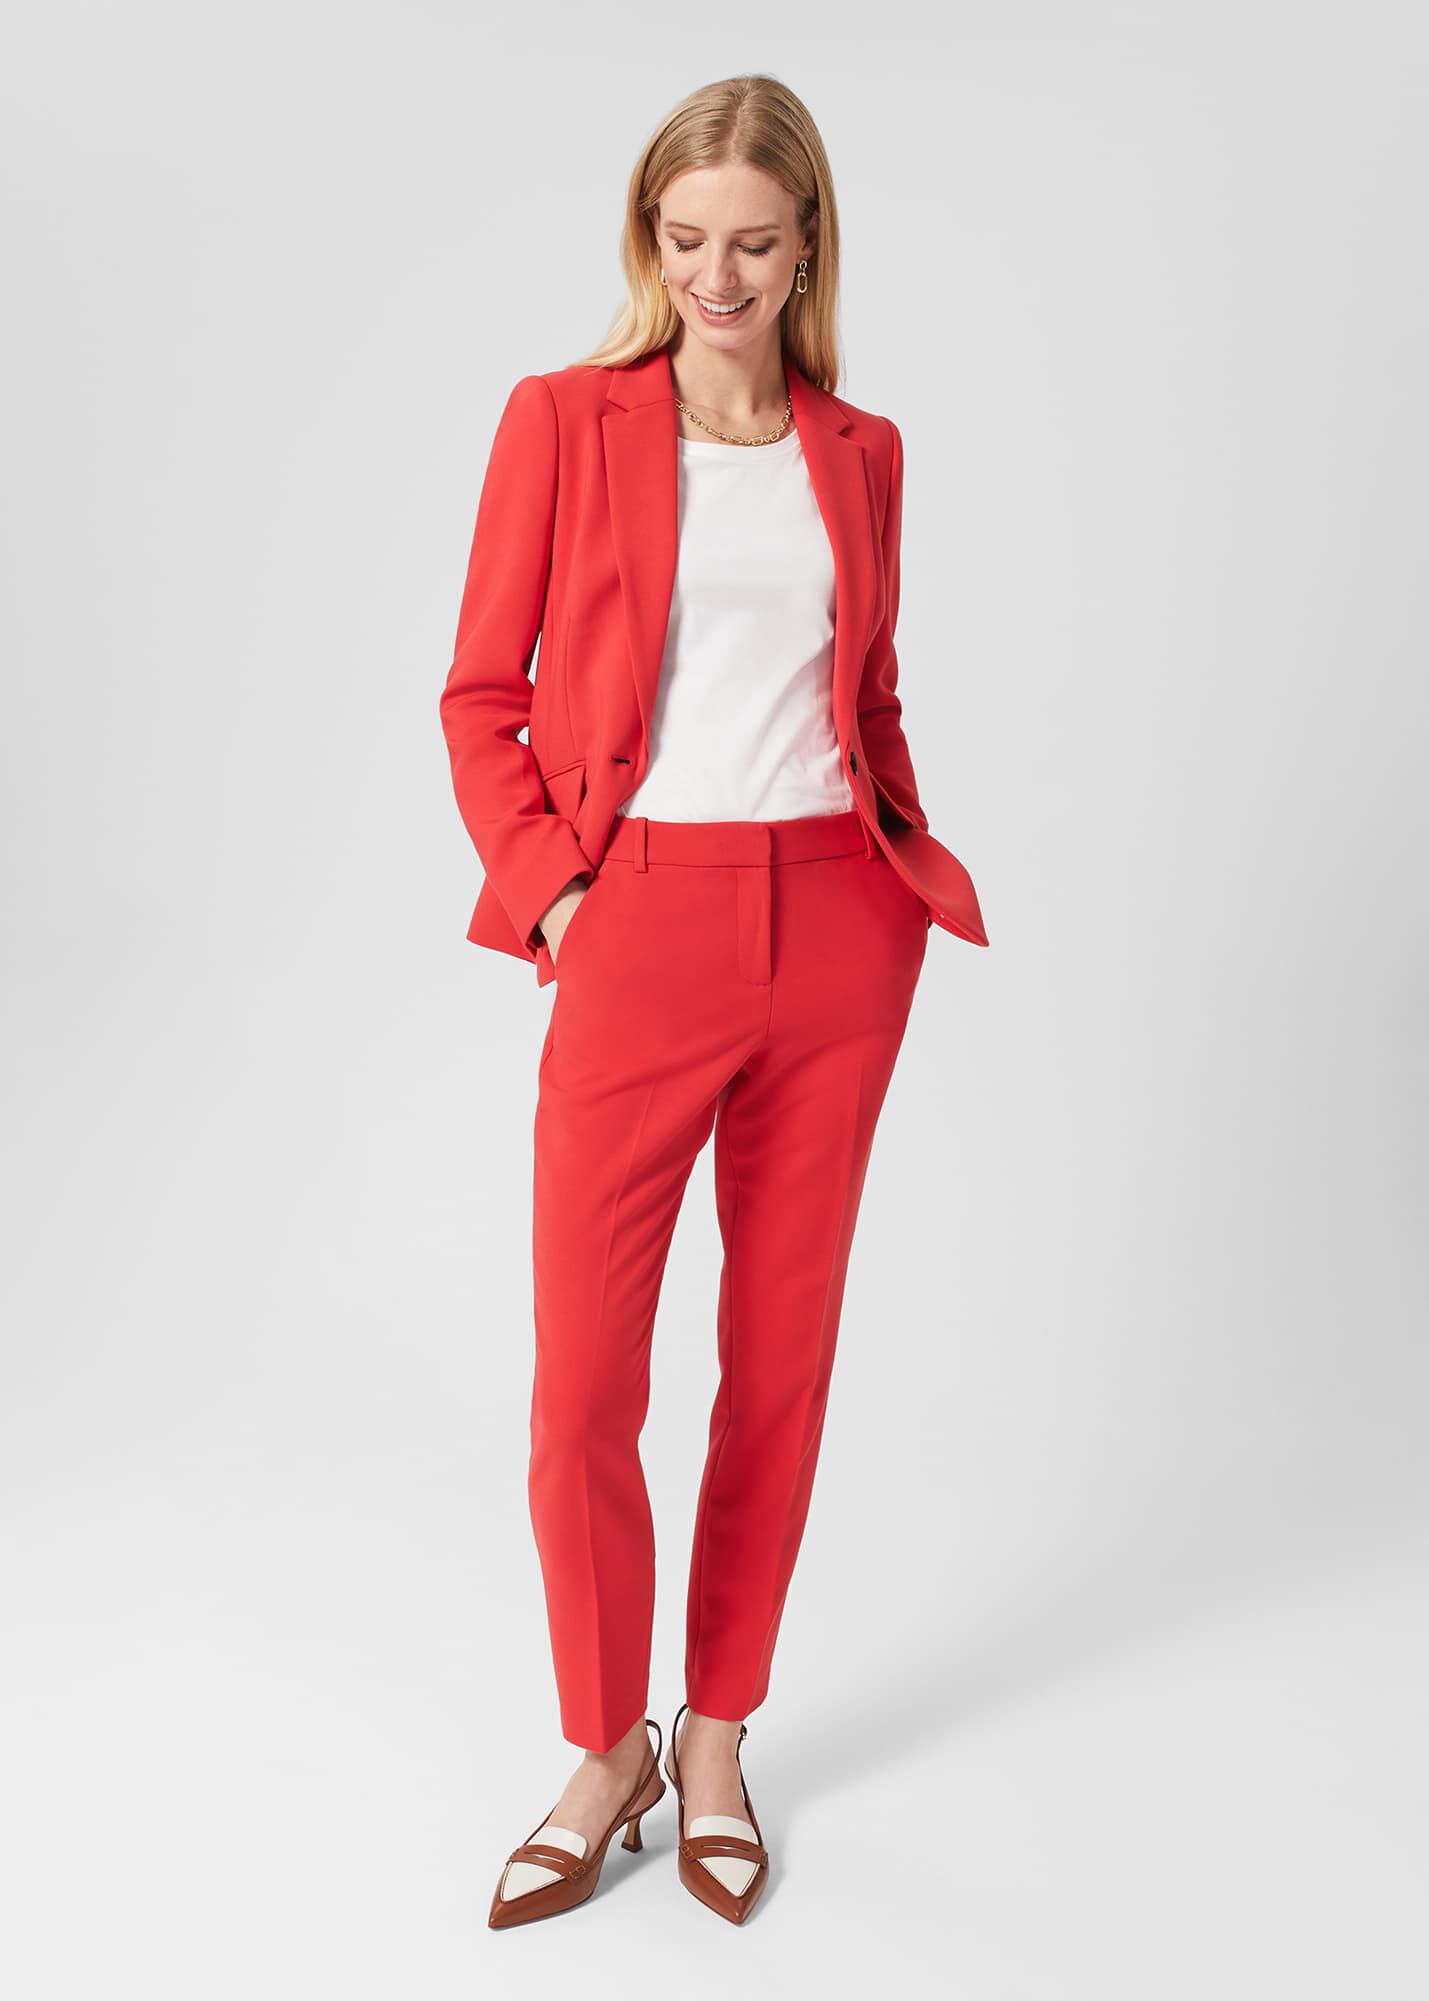 Trouser Suits for Female Wedding Guests  Karen Millen UK